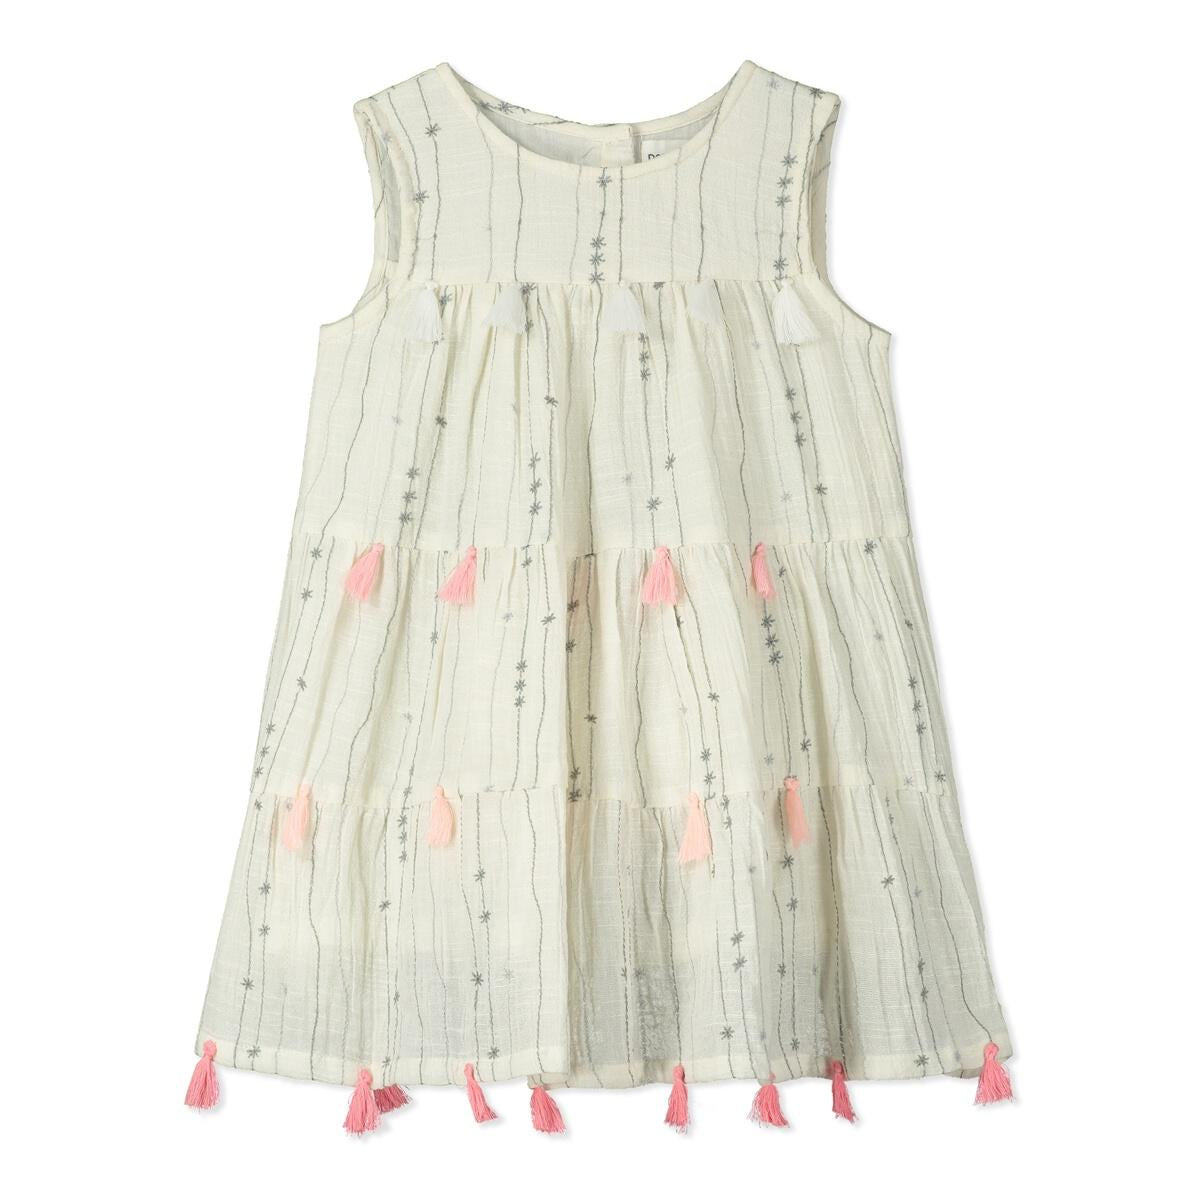 Sakura Print Tassel Dress - Twinkle Twinkle Little One